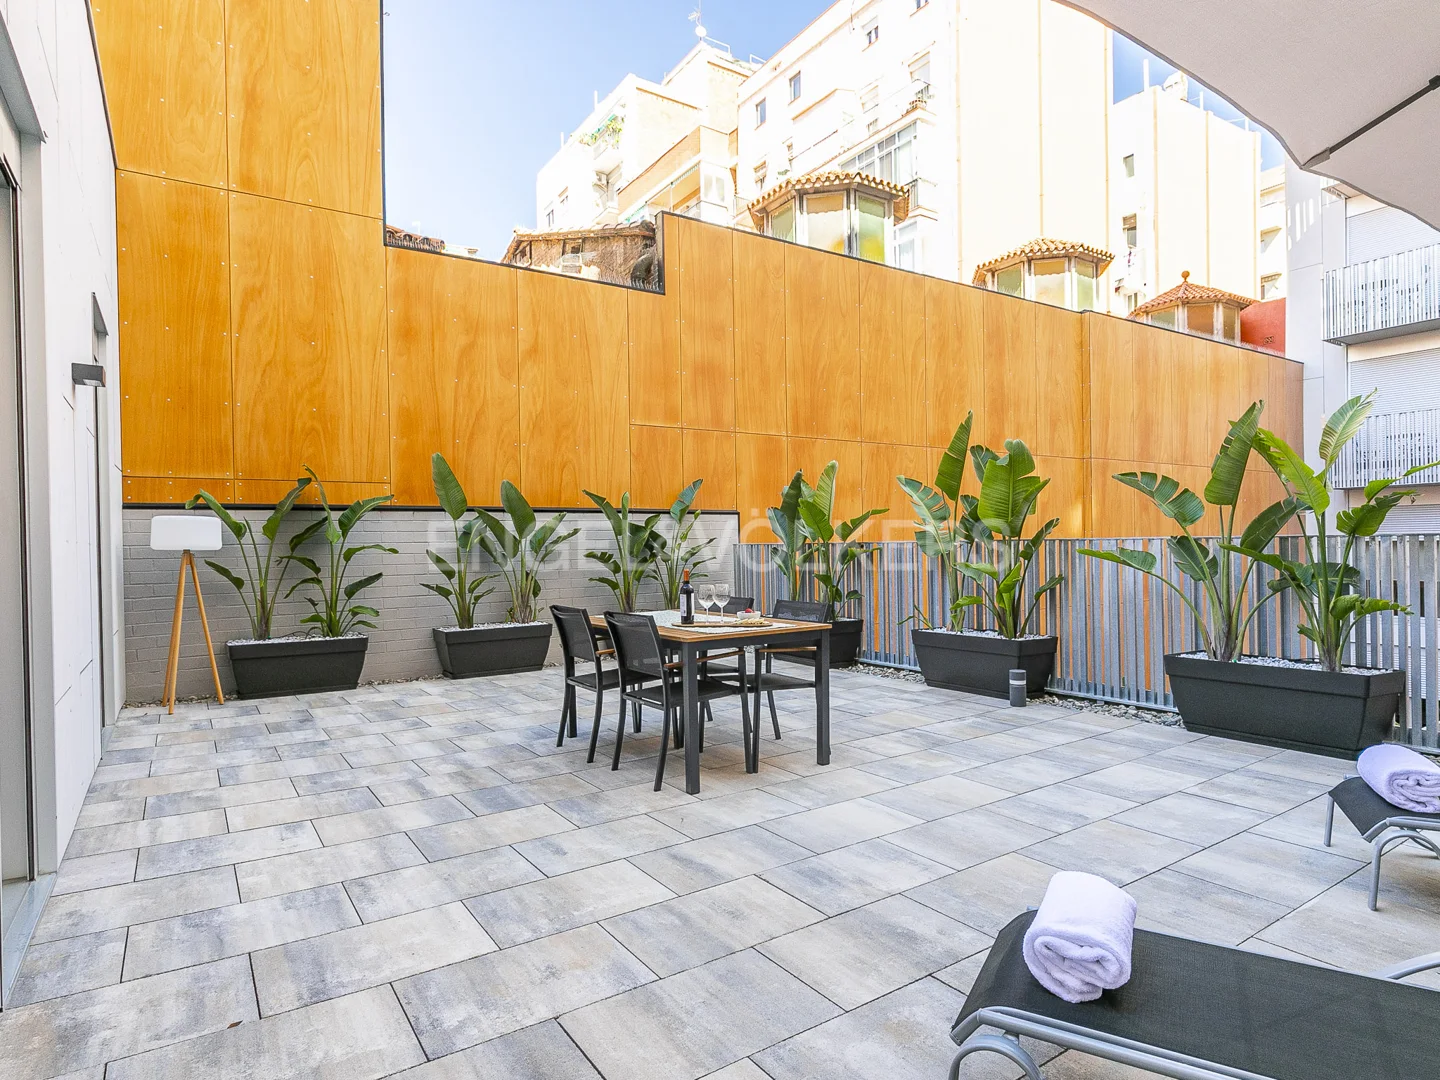 Temporary apartment in Sagrada Familia